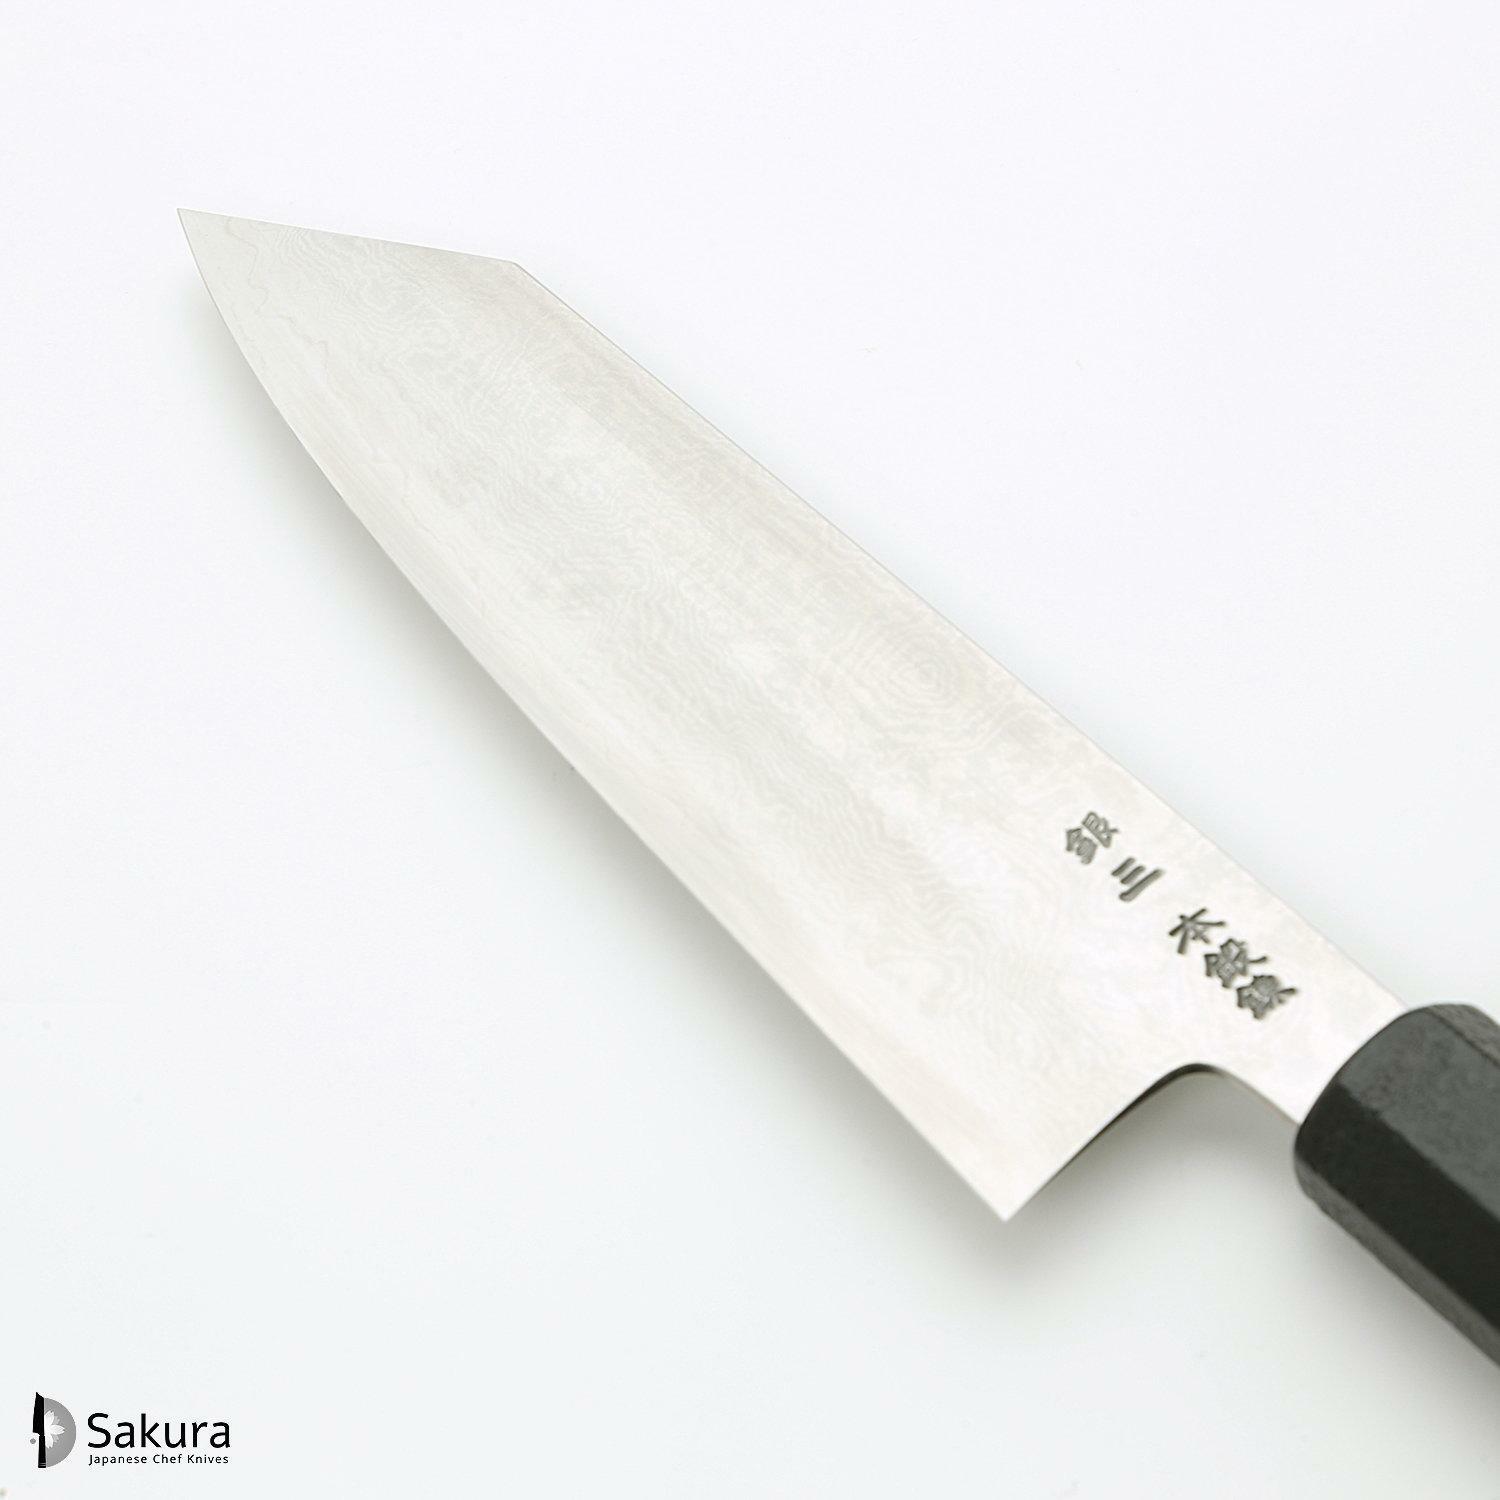 סכין רב-תכליתית בּוּנְקָה 180מ״מ מחושלת בעבודת יד 3 שכבות: פלדת פחמן יפנית מתקדמת מסוג Ginsan Silver#3 עטופה פלדת אל-חלד בגימור דמשק גימור דמשק האדו יפן